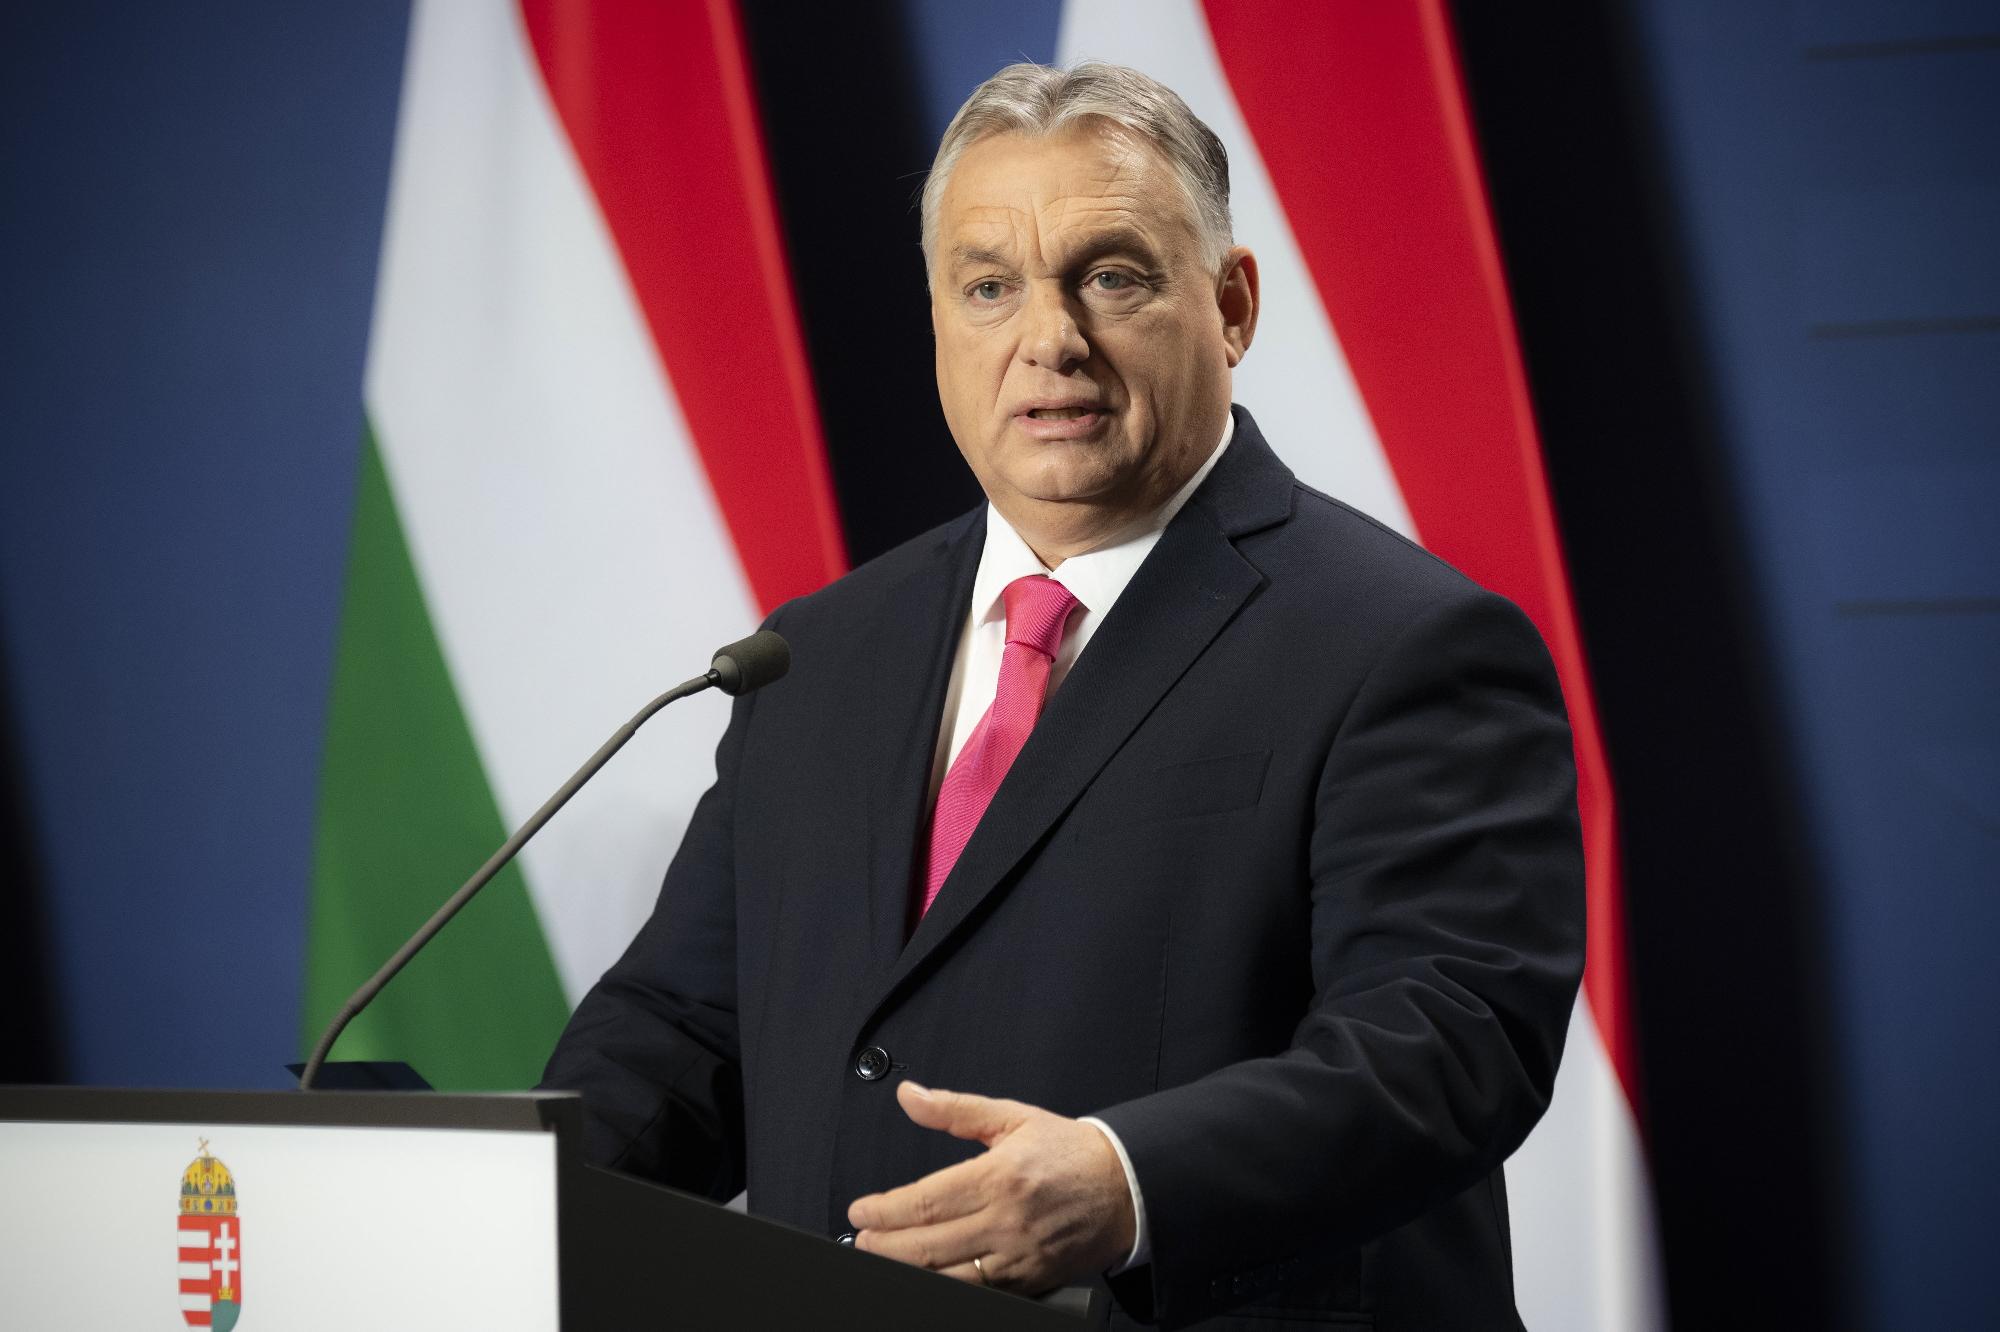 Kormányinfó - Orbán Viktor nemzetközi sajtótájékoztatója